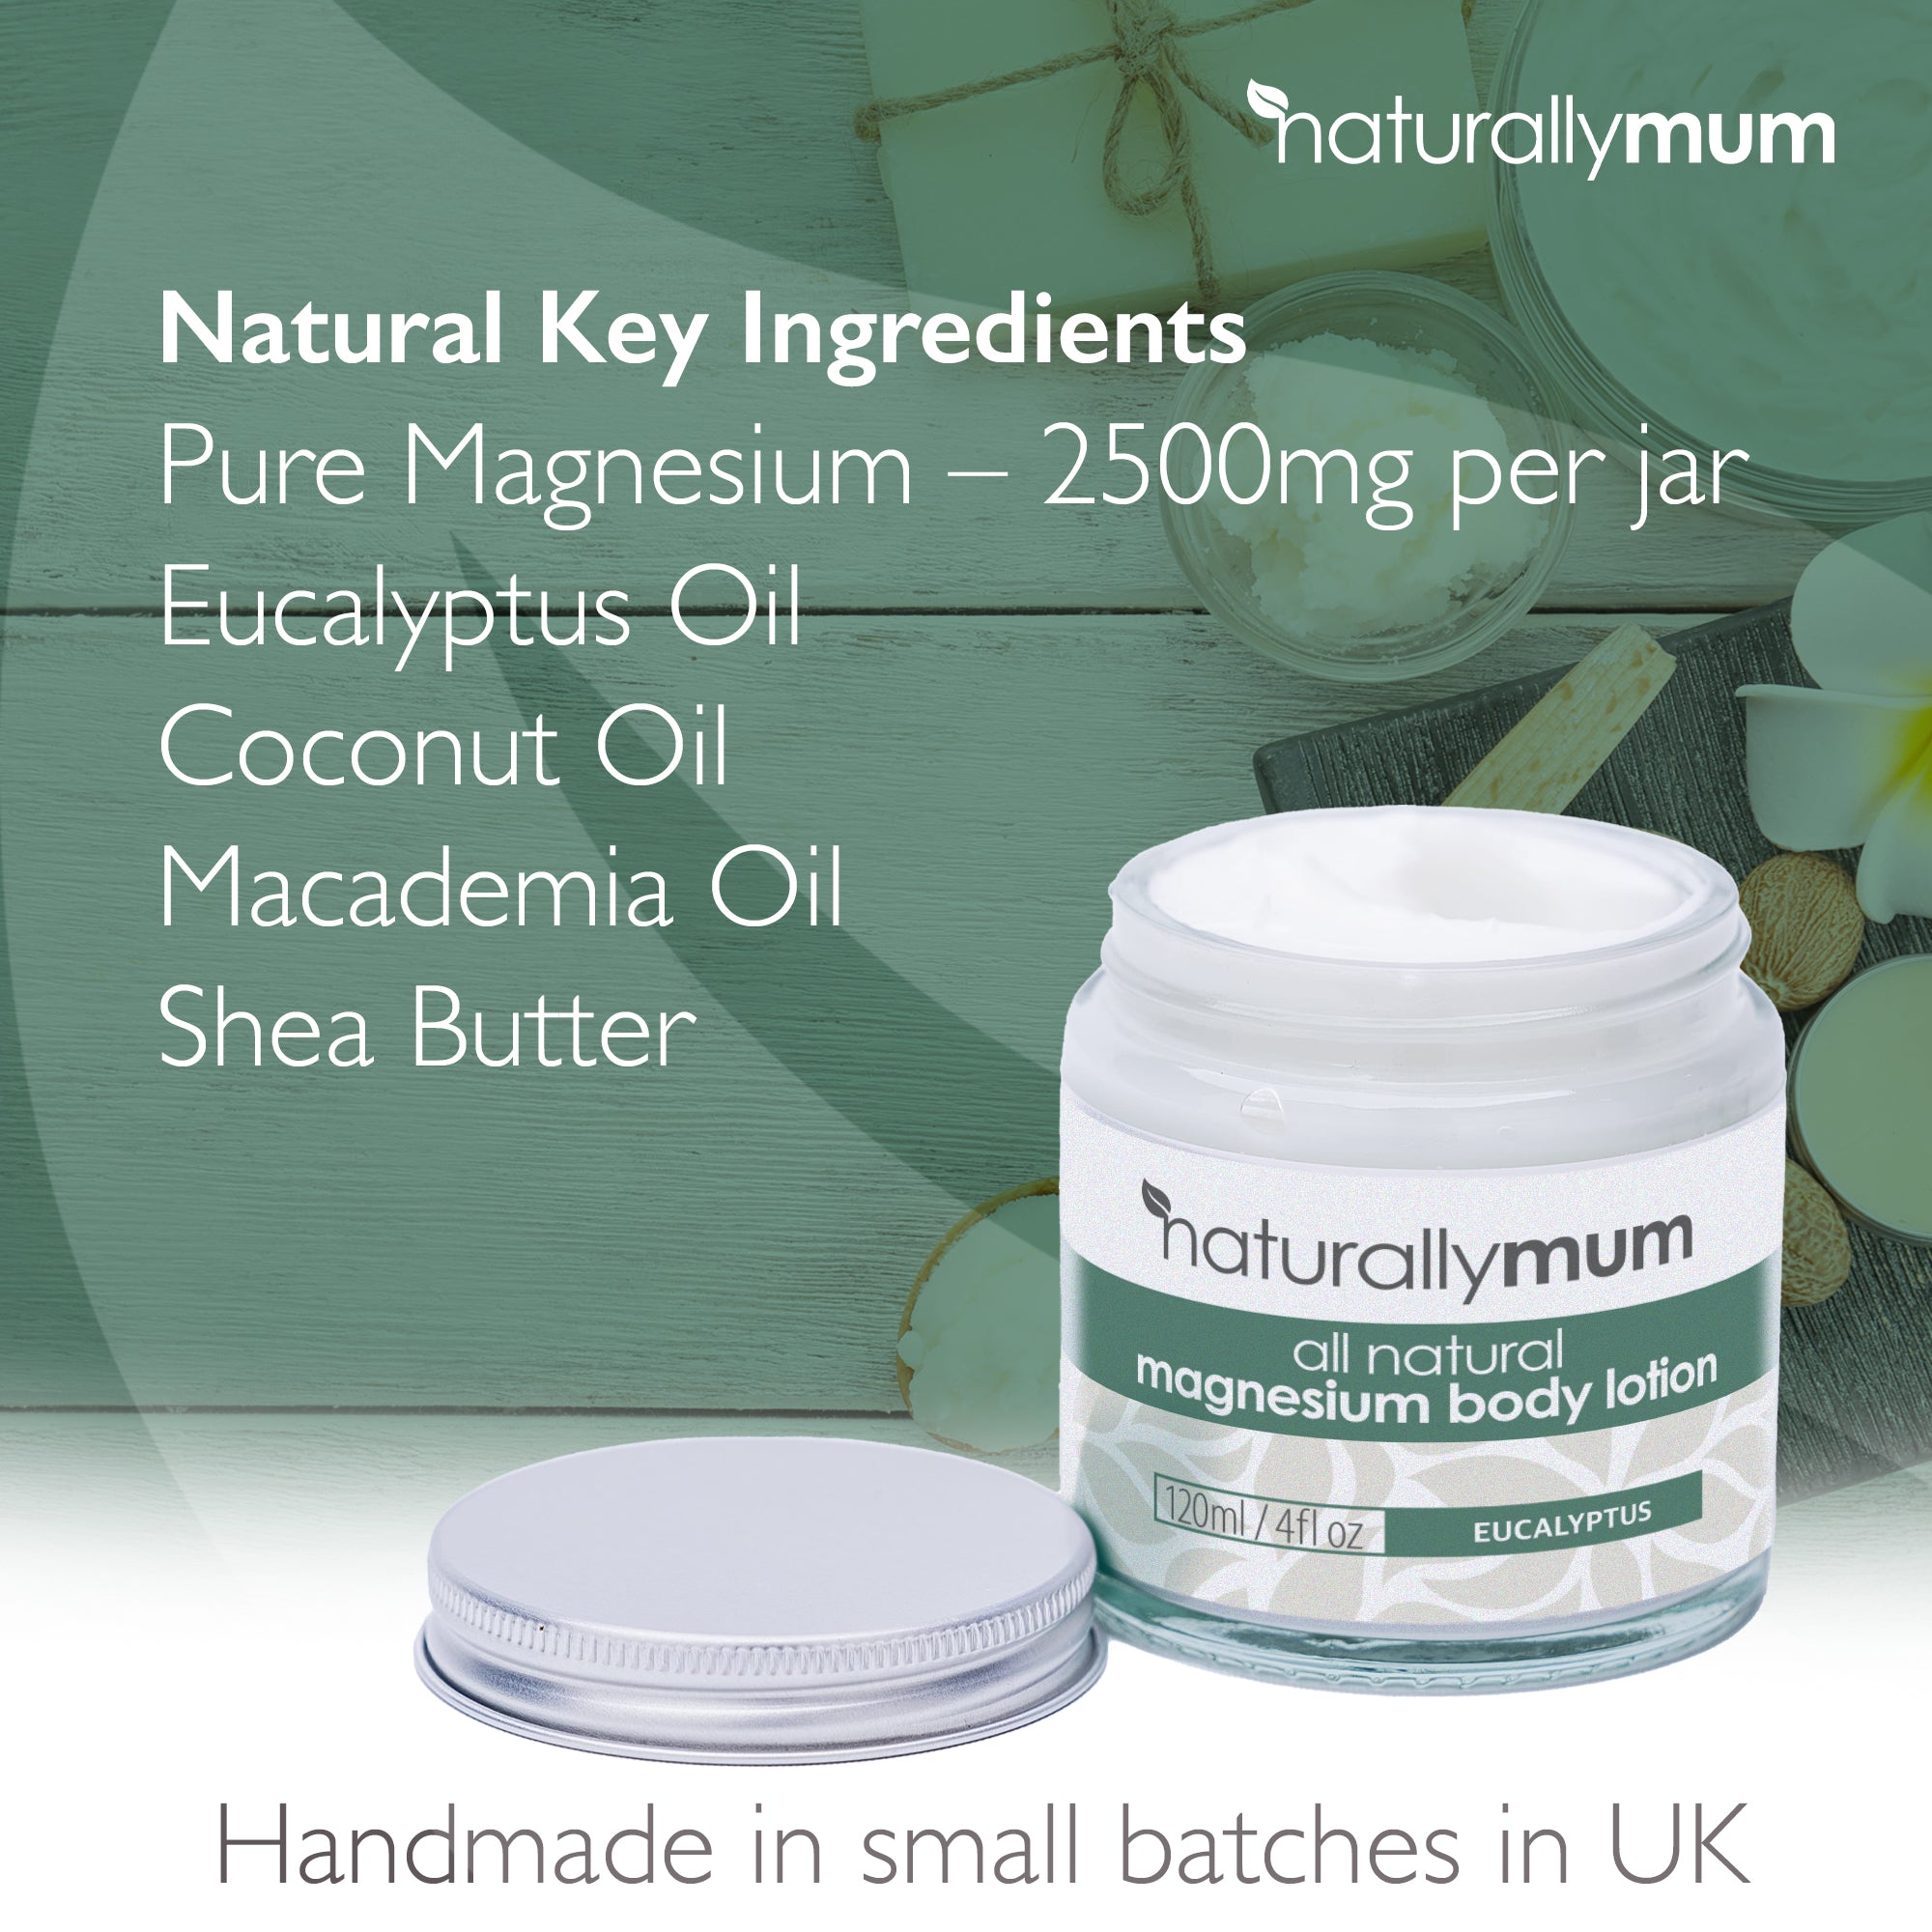 NaturallyMum Magnesium Body Lotion | Eucalyptus | 120ml